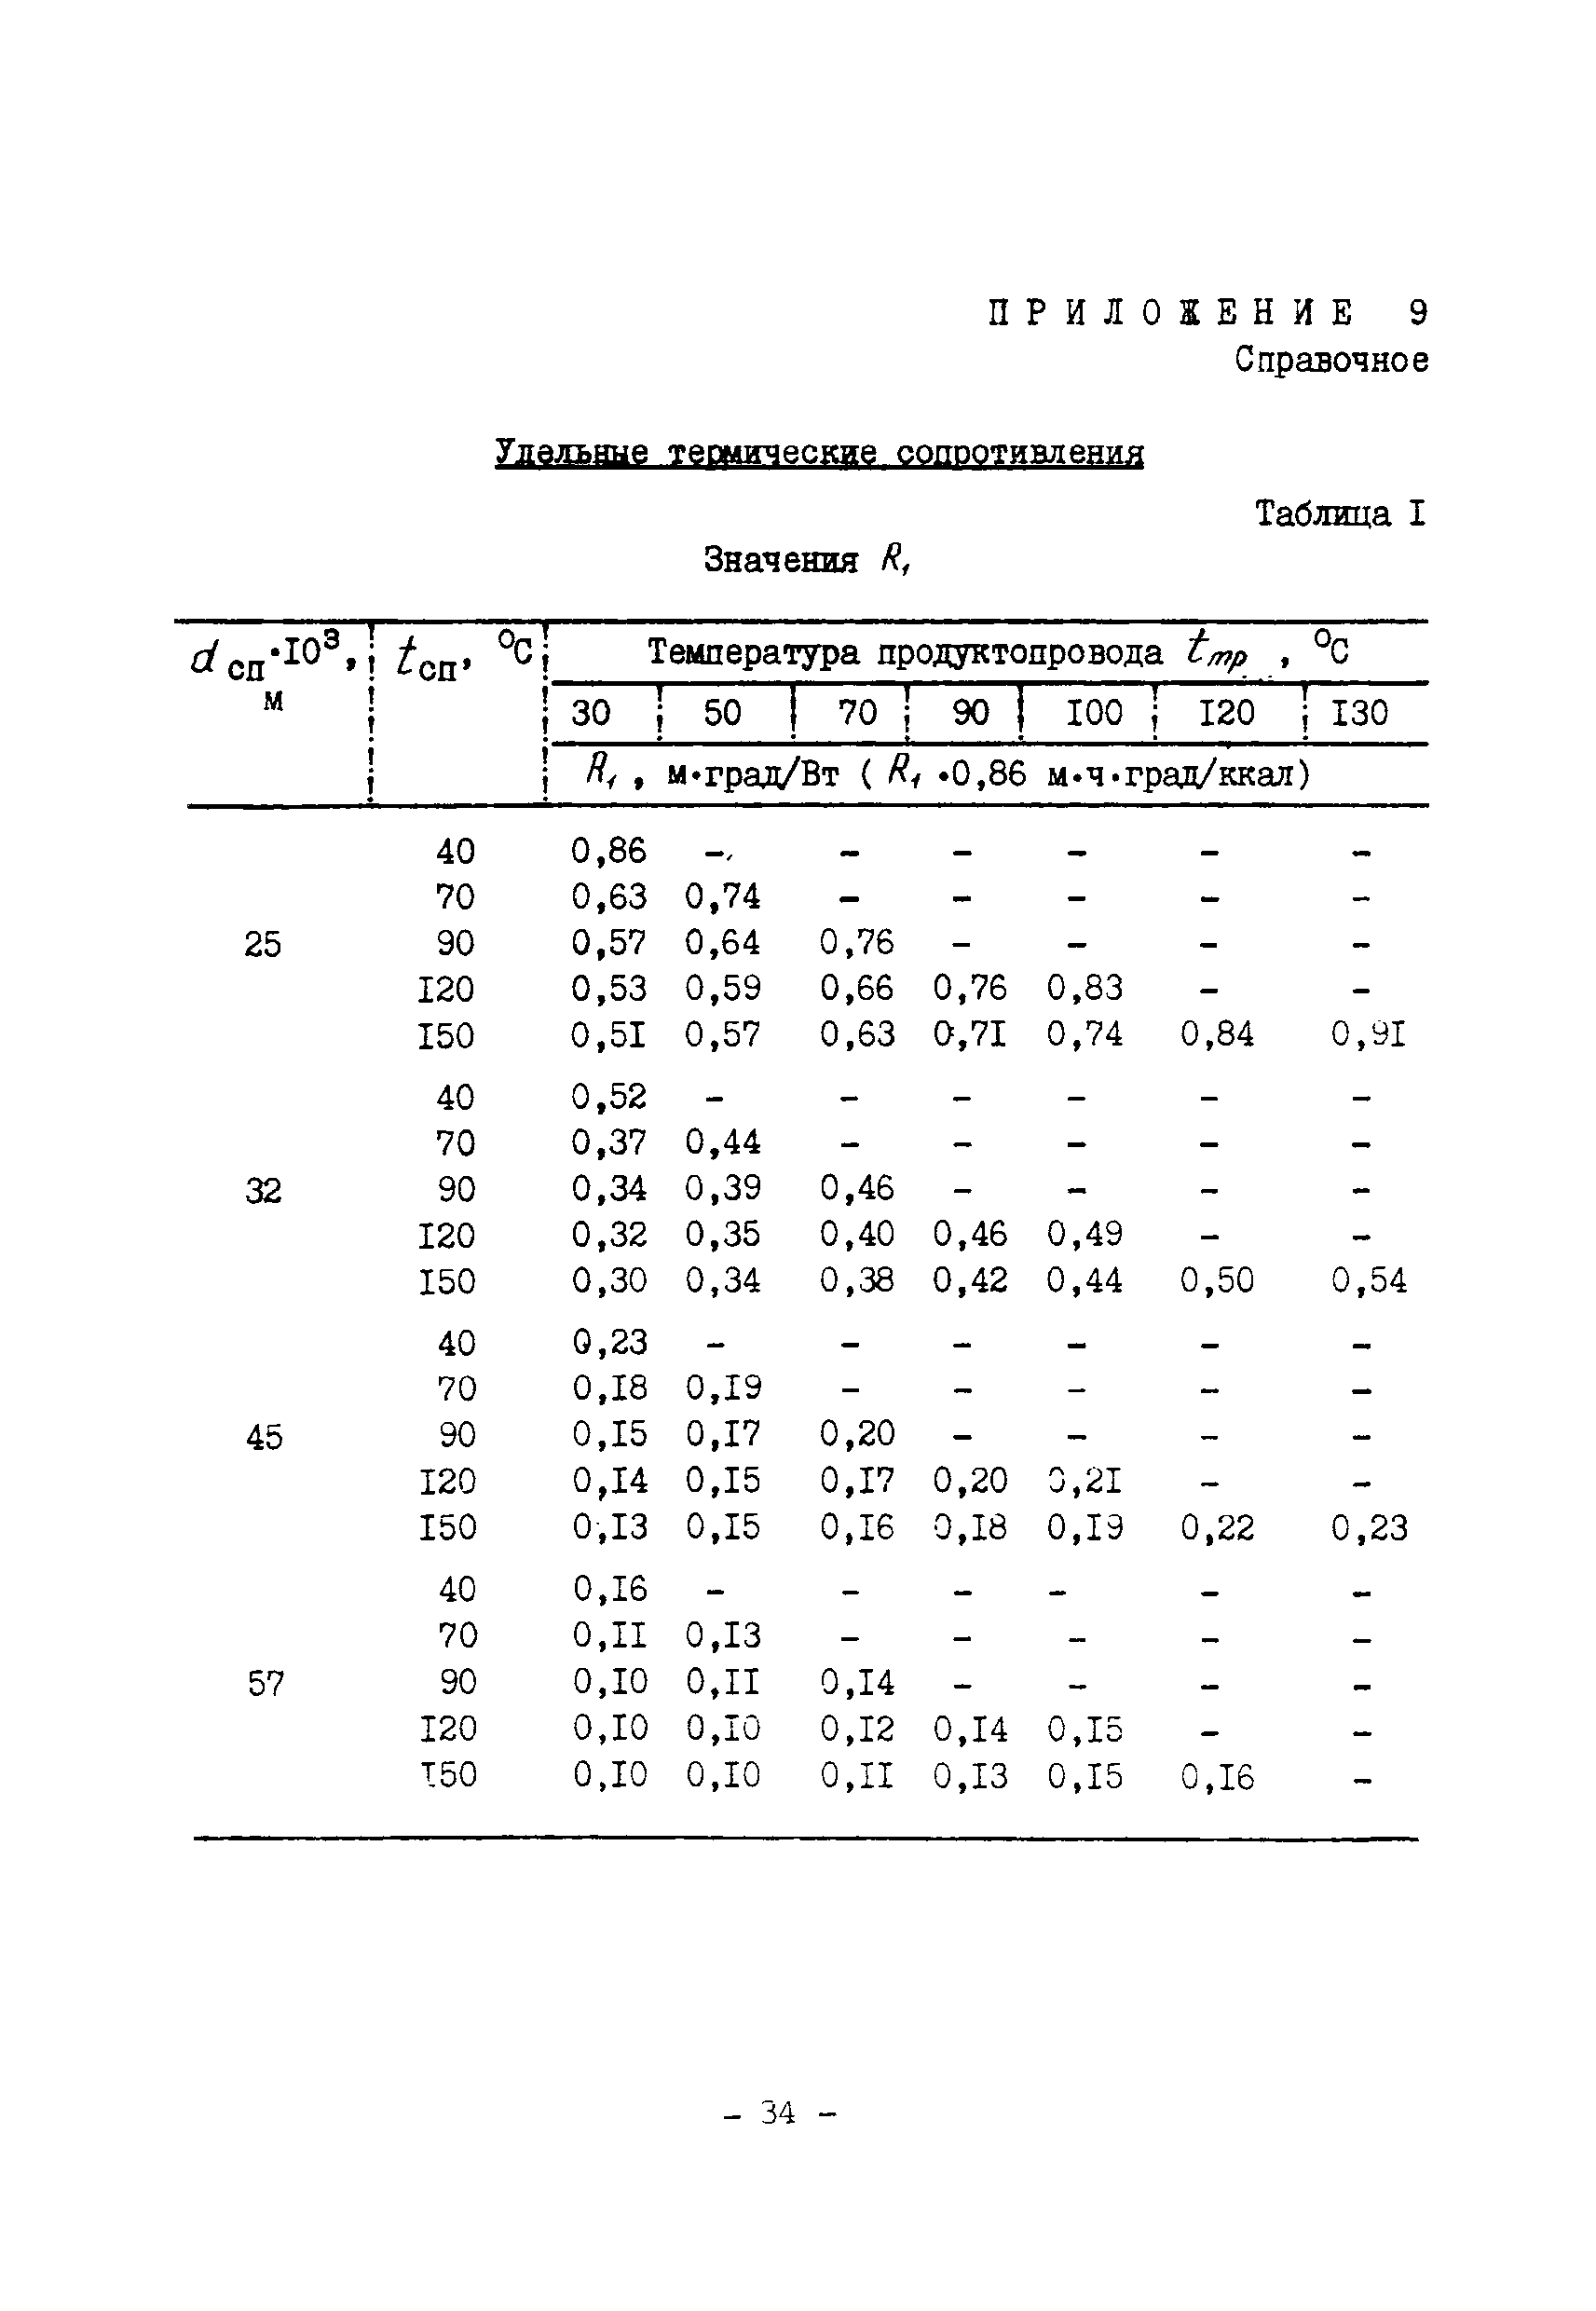 ВСН 168-76/ММСС СССР